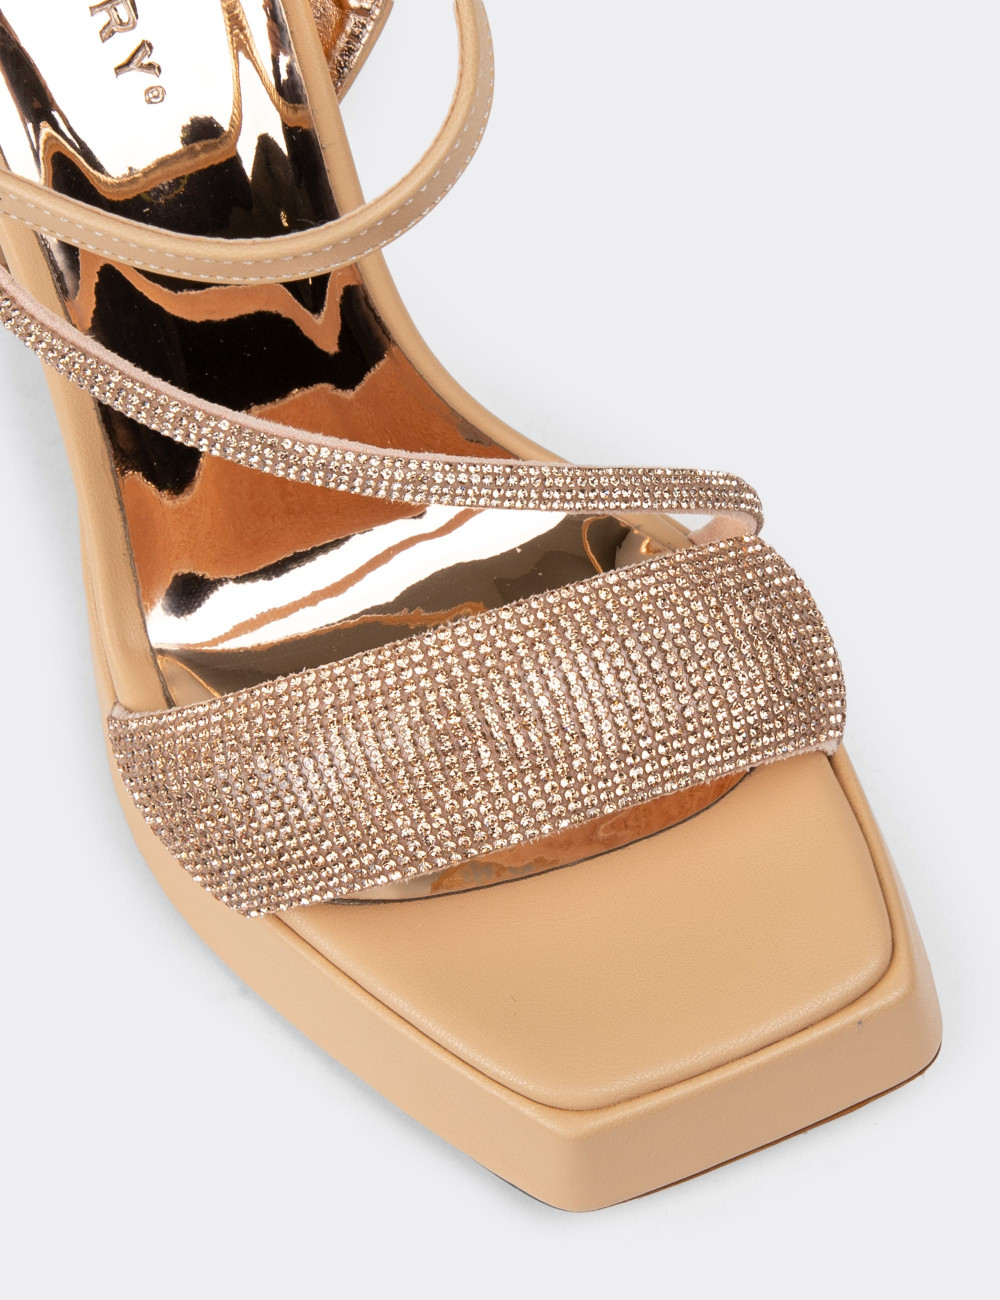 Bej Platform Topuklu Taşlı Kadın Abiye Ayakkabı - K0304ZBEJM01